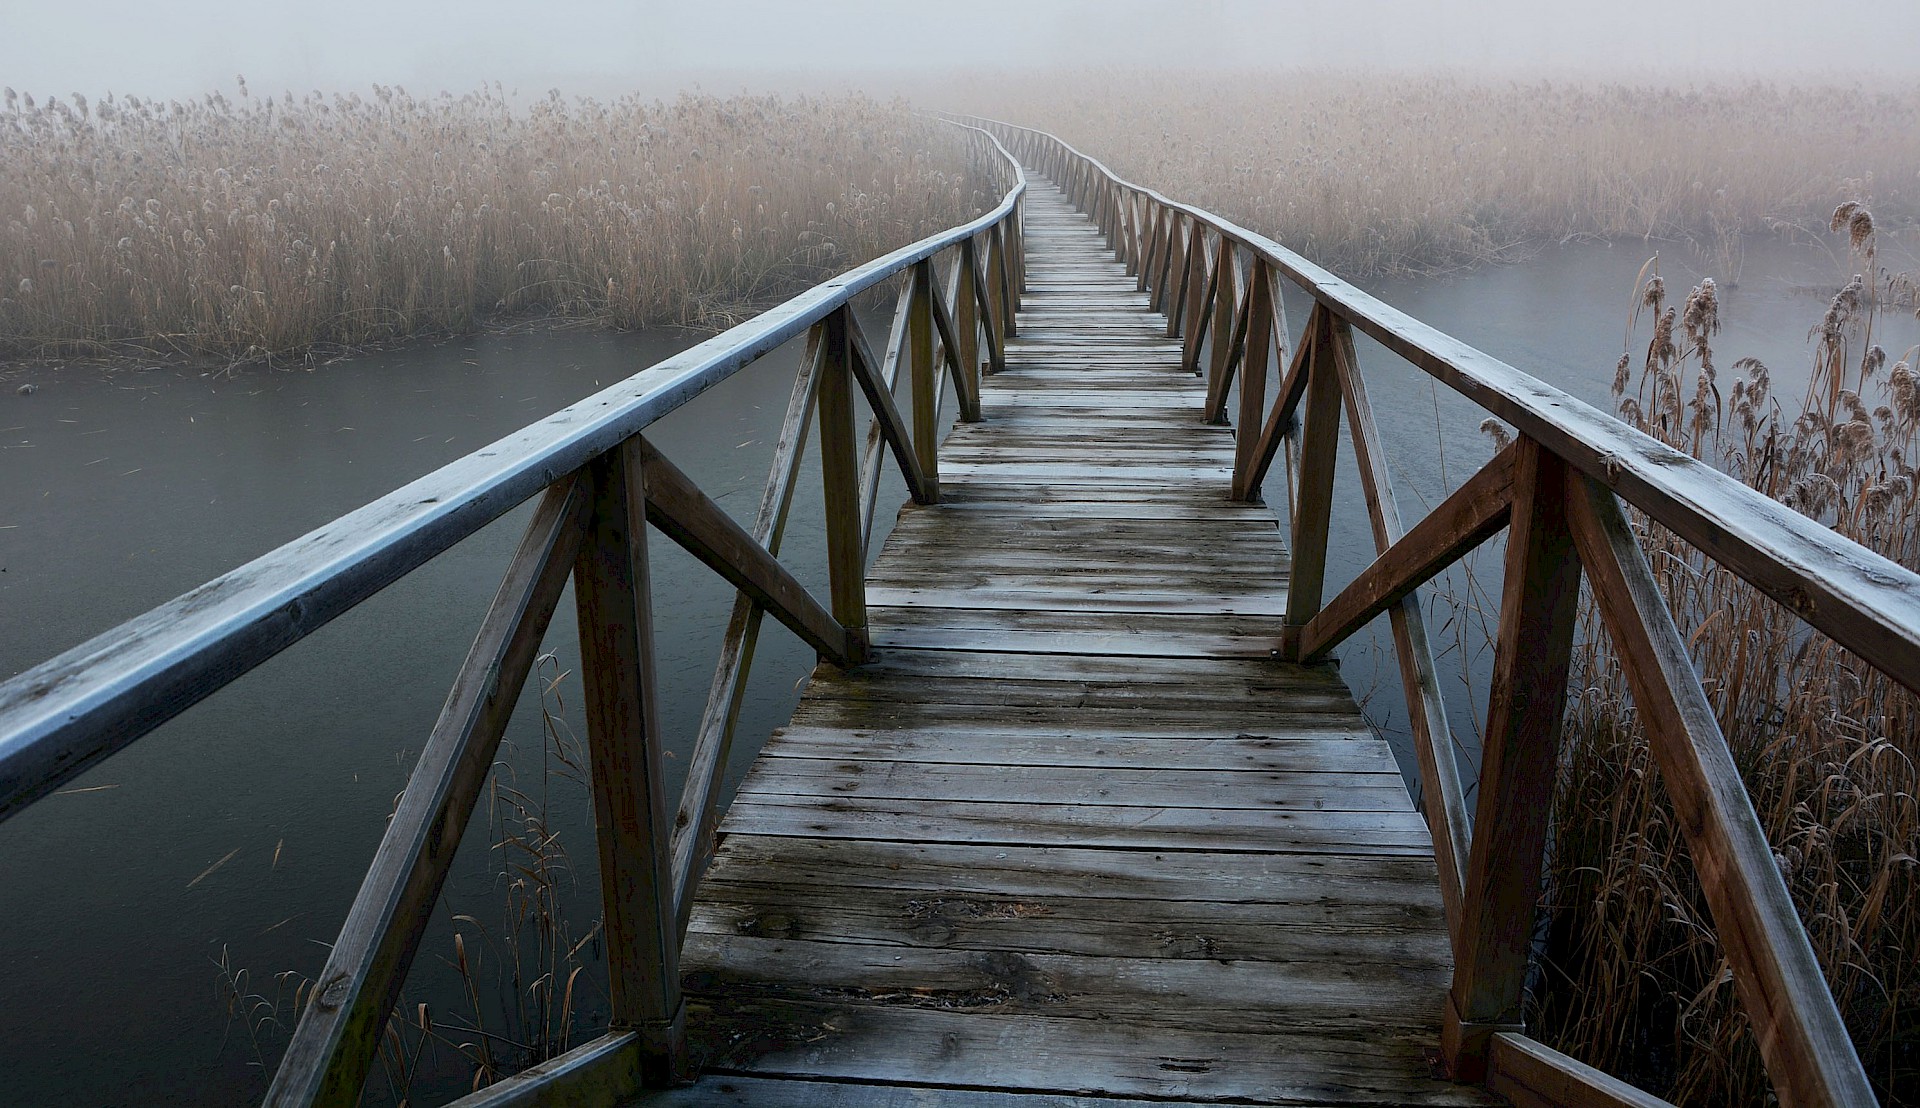 Schmale Holzbrücke über einen Fluss, leichter Nebel, Raureif auf dem Geländer, am gegenüberliegenden Ufer dichtes Schilf, in dem die Brücke verschwindet.